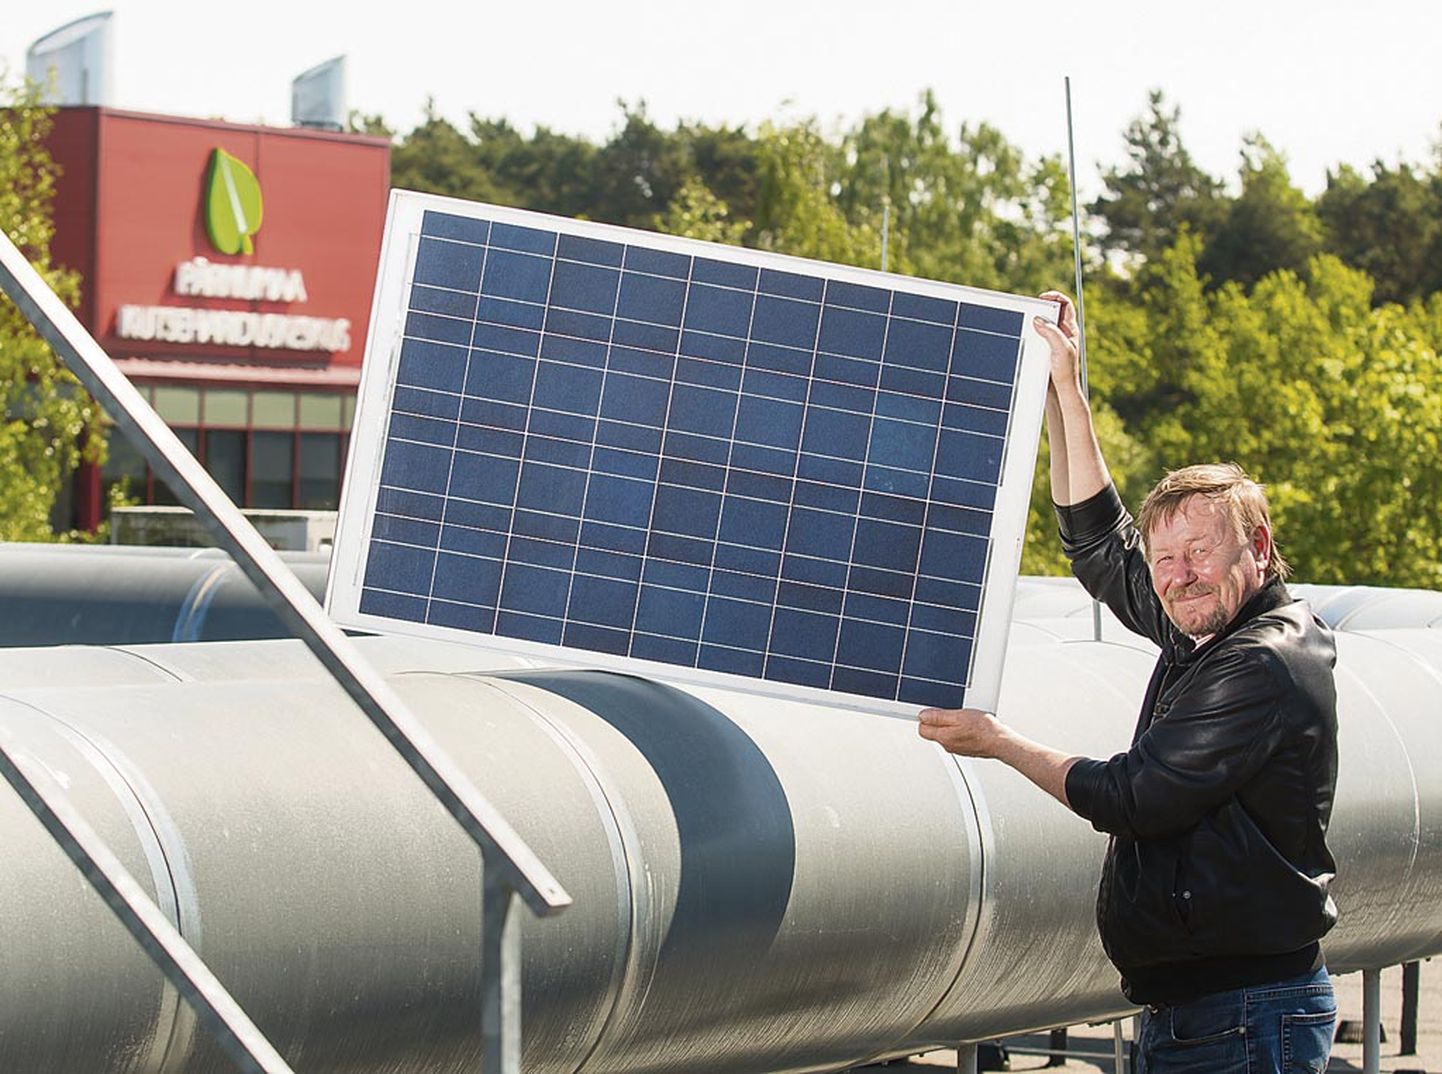 Pärnumaa kutsehariduskeskuse D-korpuse katusele paigaldatakse juba enne jaanipäeva kolm päikeseelektrijaama kokku kümne päikesepaneeliga. Enno Puidet, kellest saab uue eriala juht­õpetaja, demonstreerib üht taastuv­energiaallikatest.